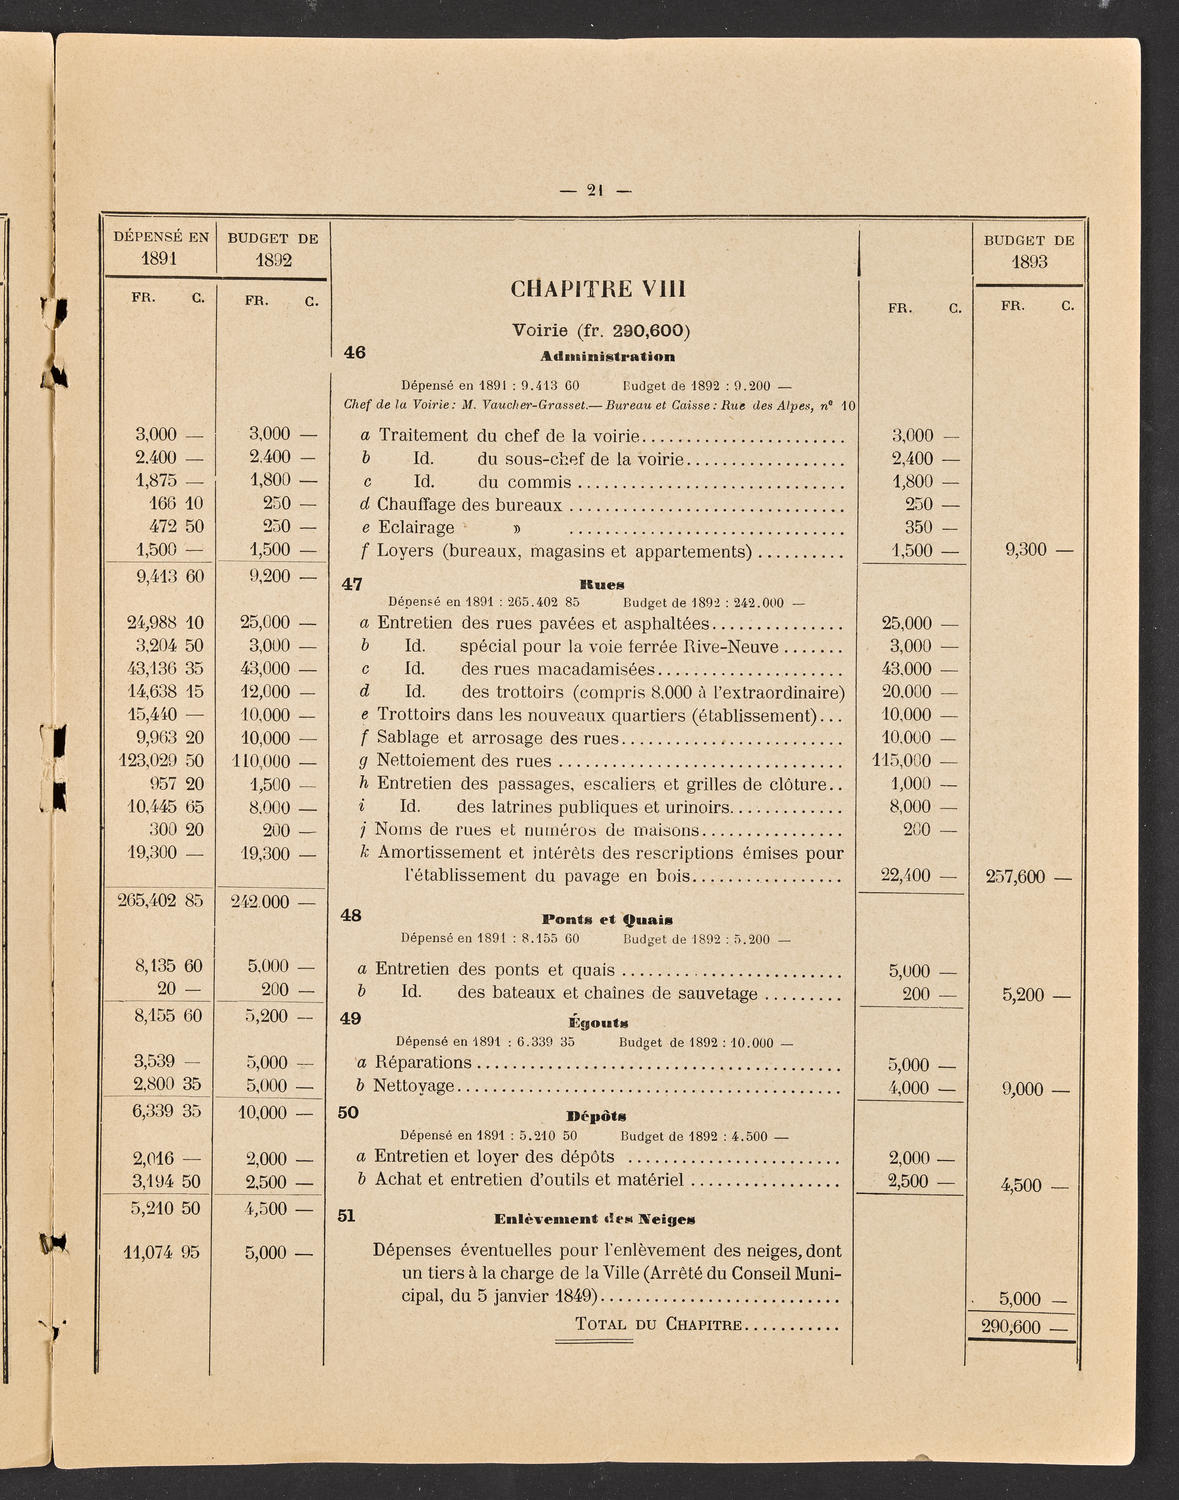 Budget de la Ville de Genève - Exercise de 1893, page 27 of 32